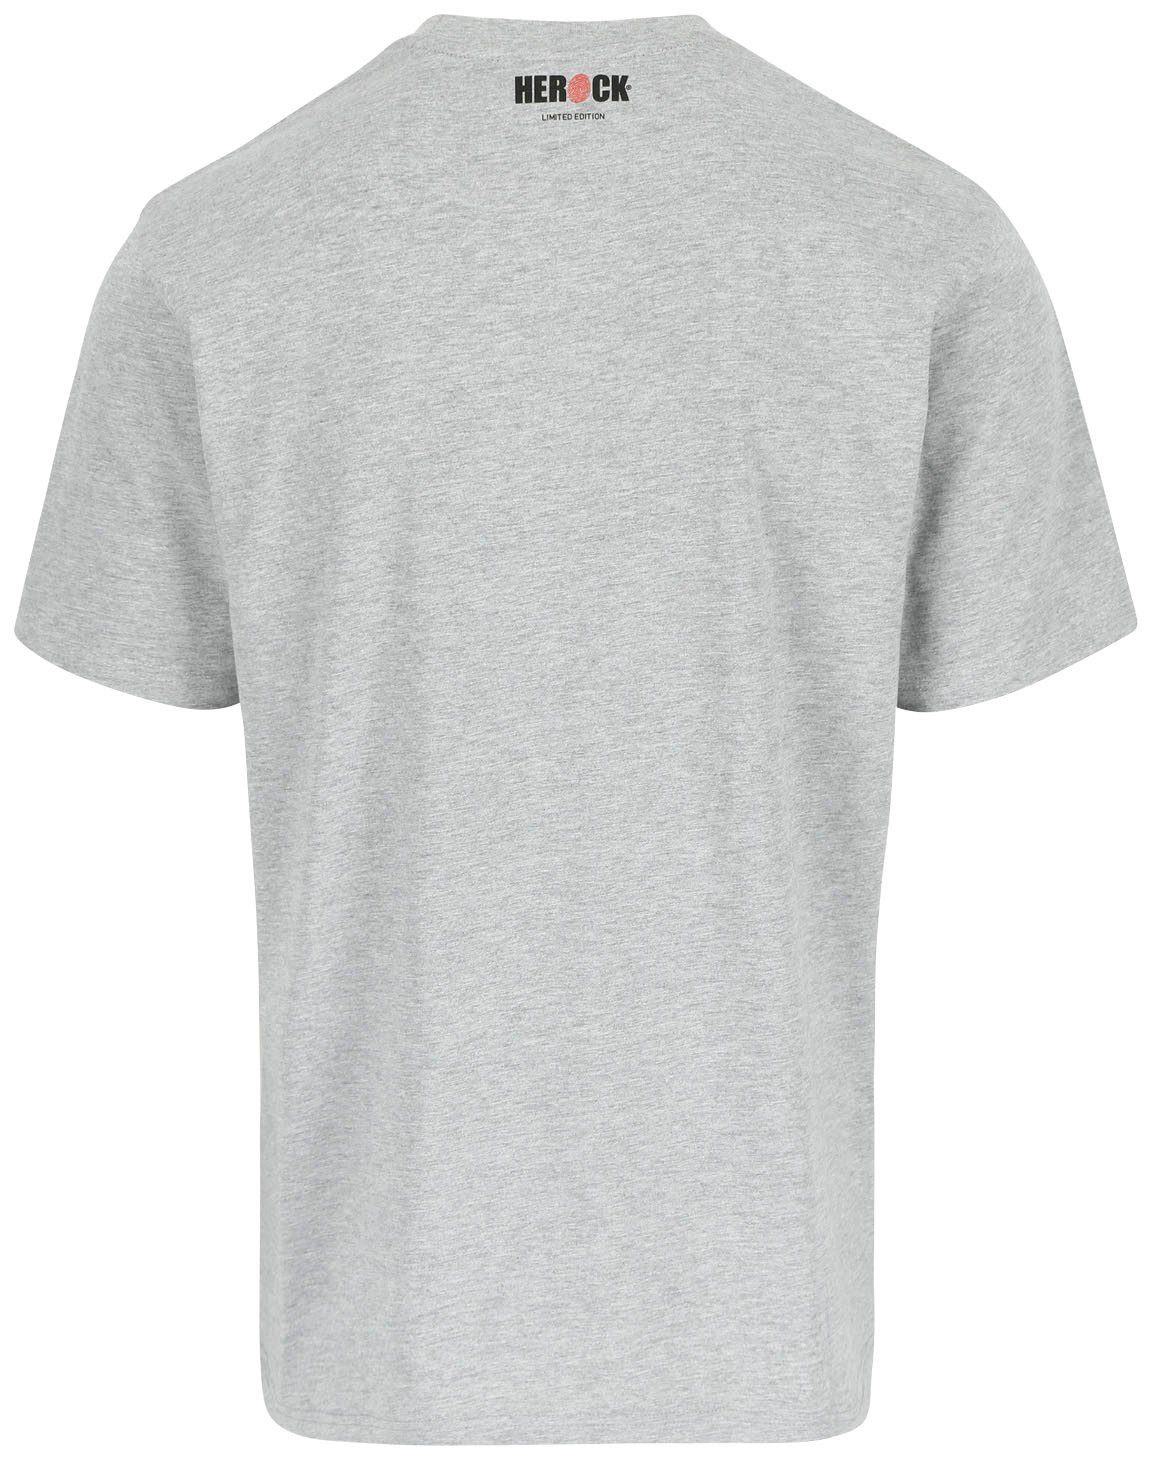 T-Shirt Worker erhältlich Herock Farben in verschiedene hellgrau Edition, Limited